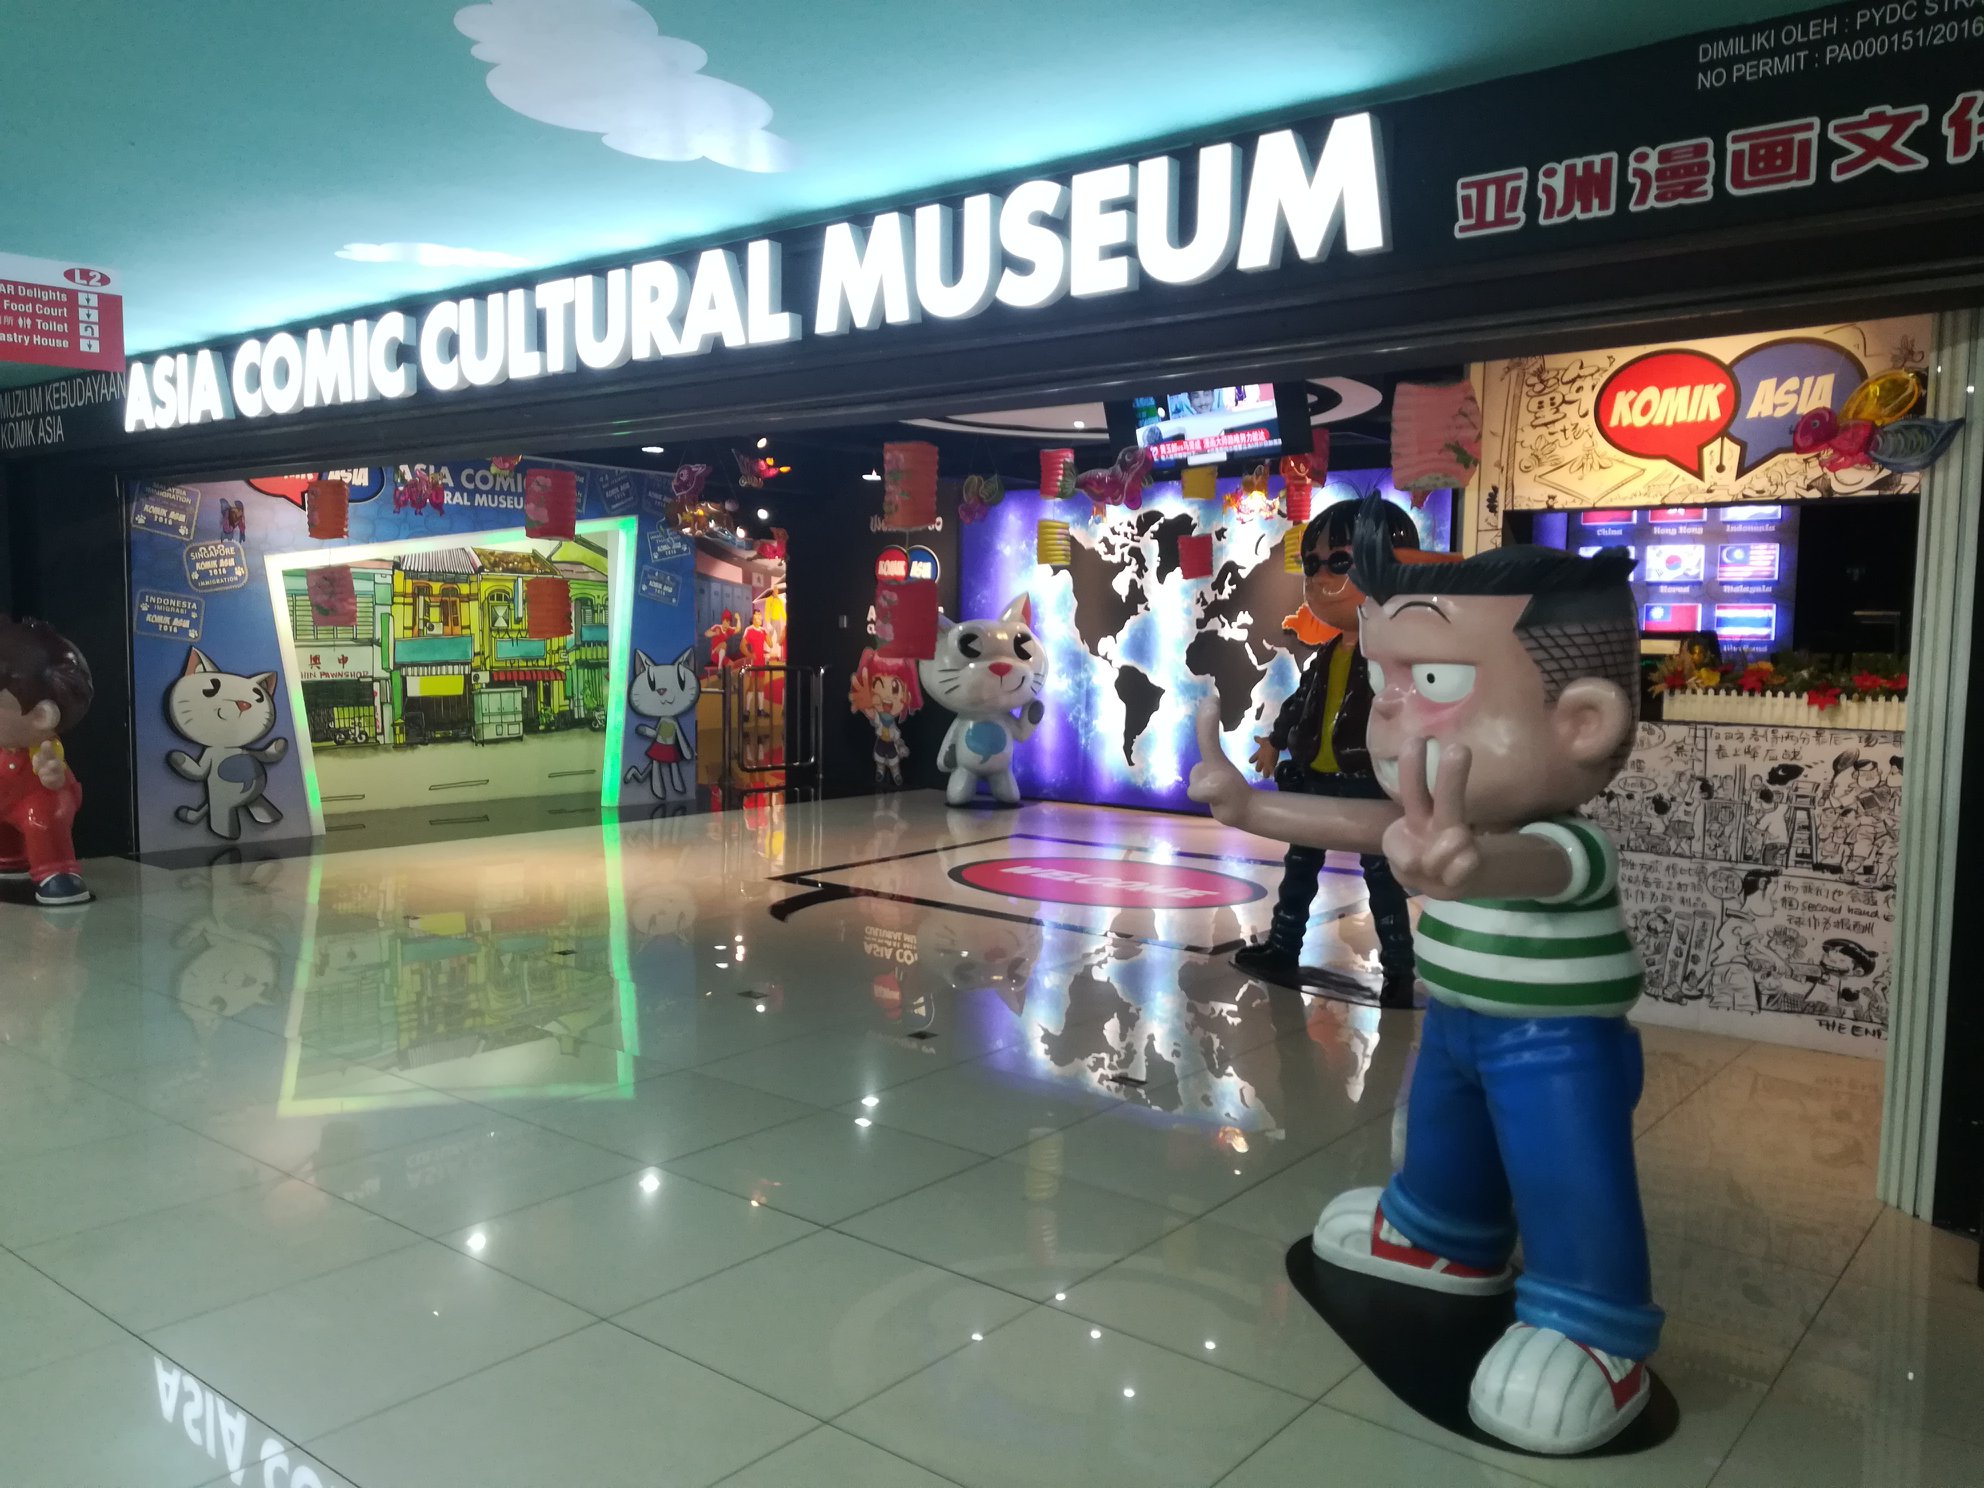 Penang Asia Comic Cultural Museum